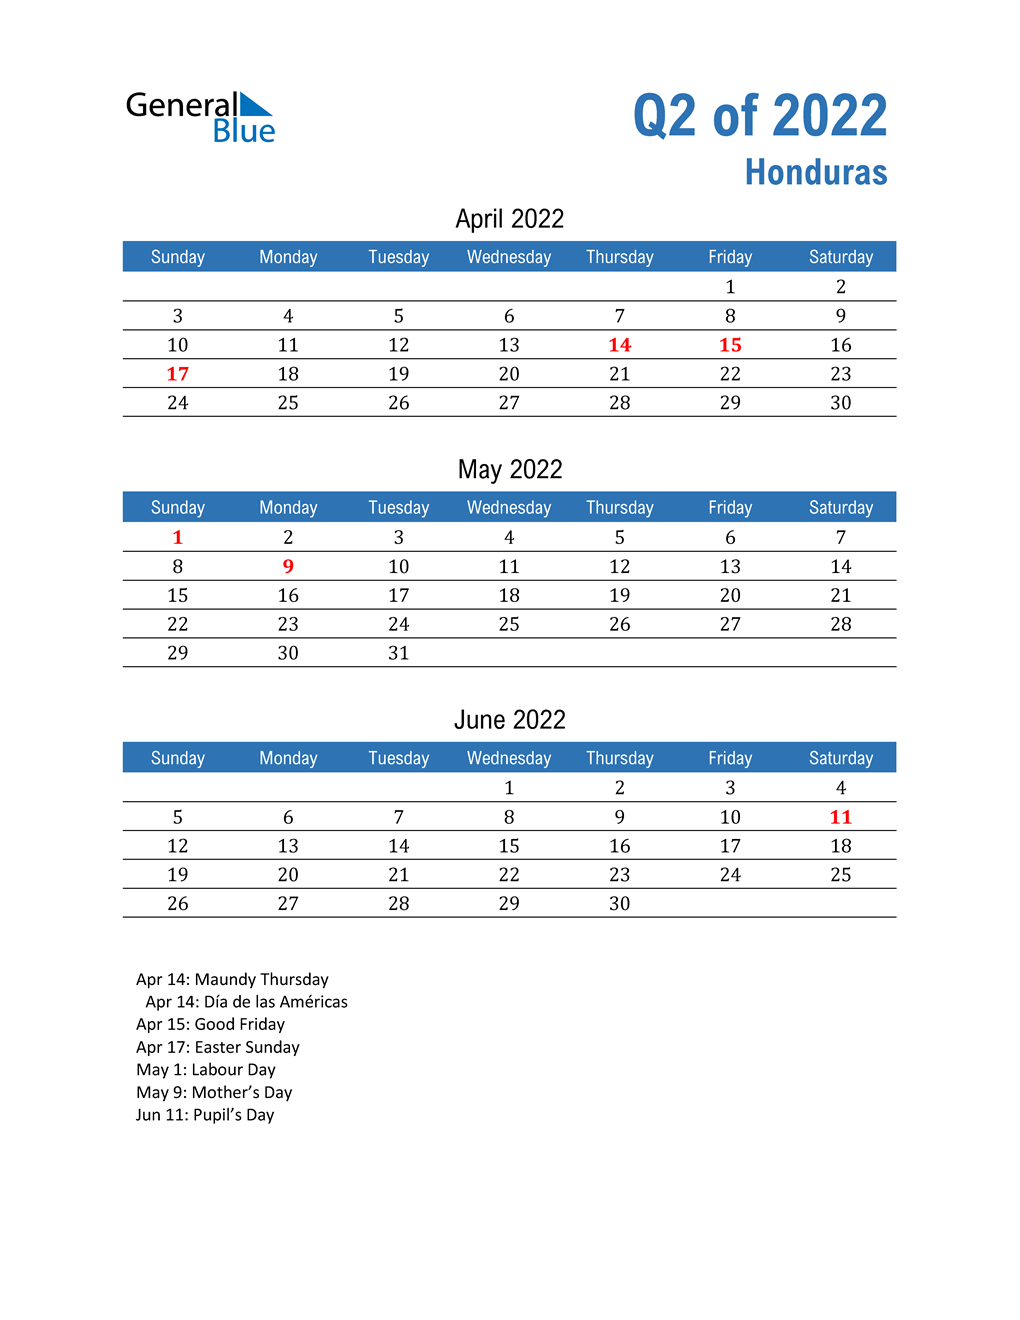  Honduras 2022 Quarterly Calendar 